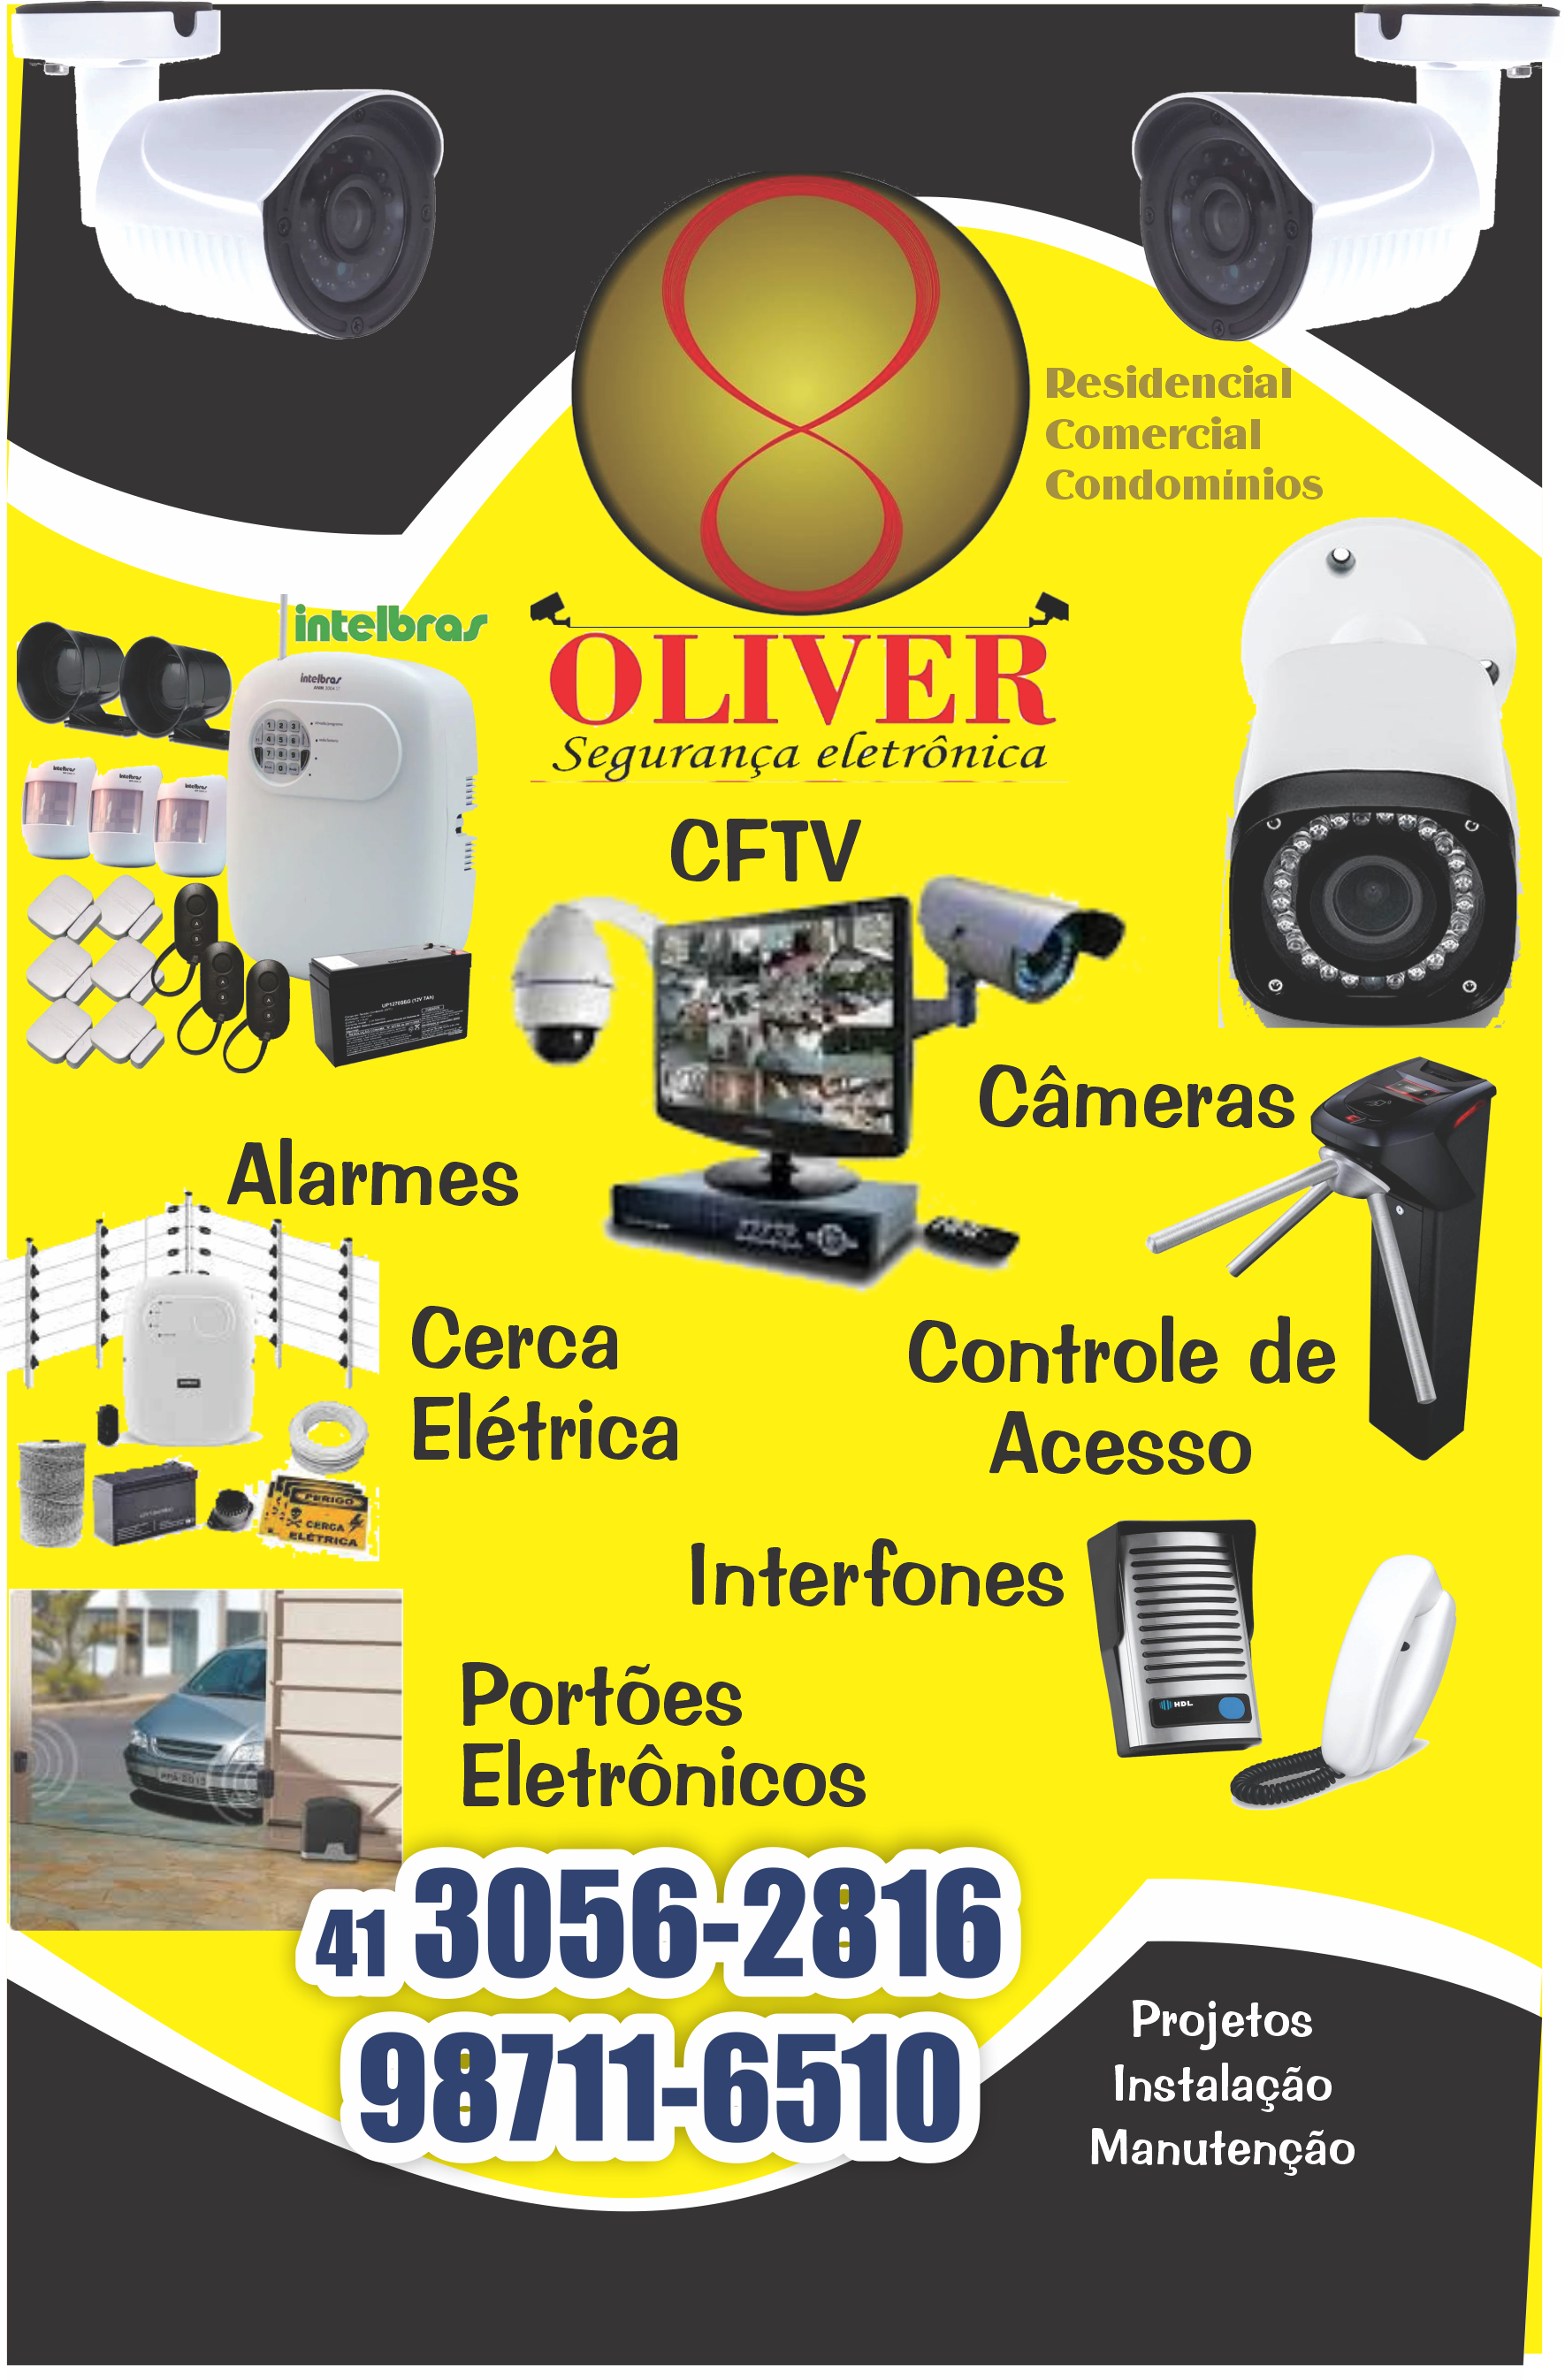 Oliver Segurança Eletrônica      Fones: (41)3056-2816 / (41) 98711-6510